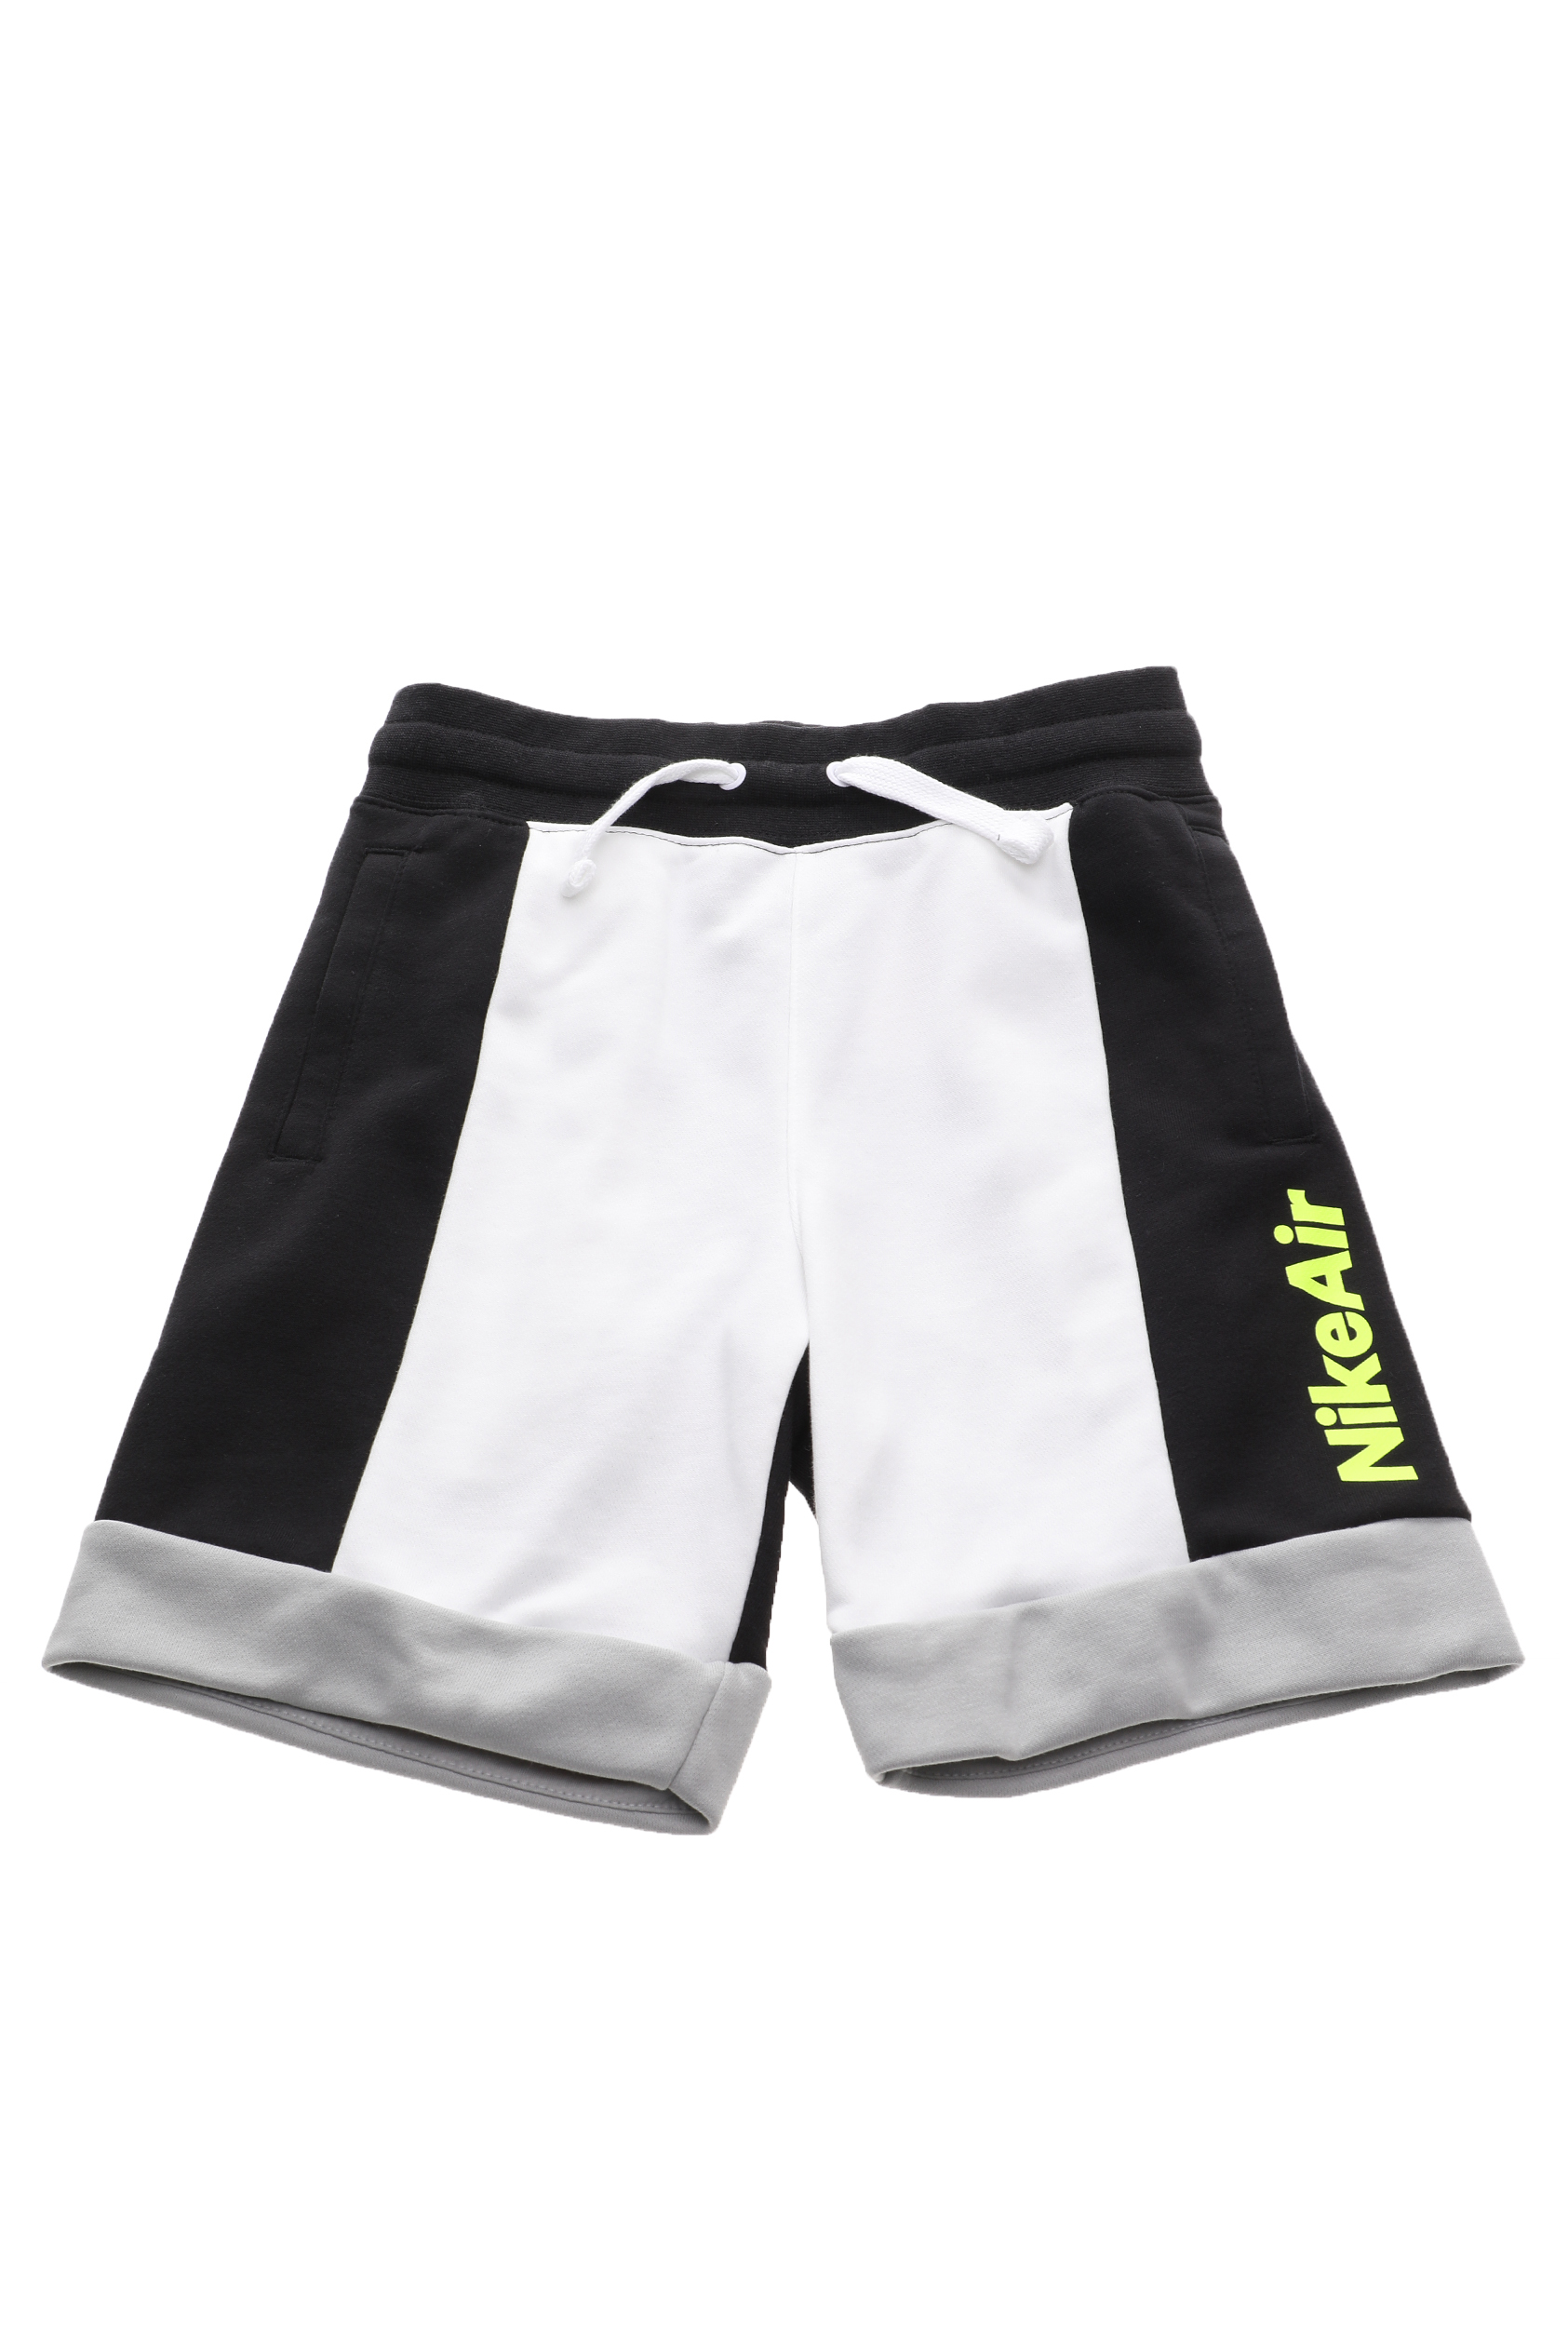 Παιδικά/Boys/Ρούχα/Σορτς-Βερμούδες NIKE - Παιδική βερμούδα NIKE AIR NSW FT SHORT λευκή μαύρη